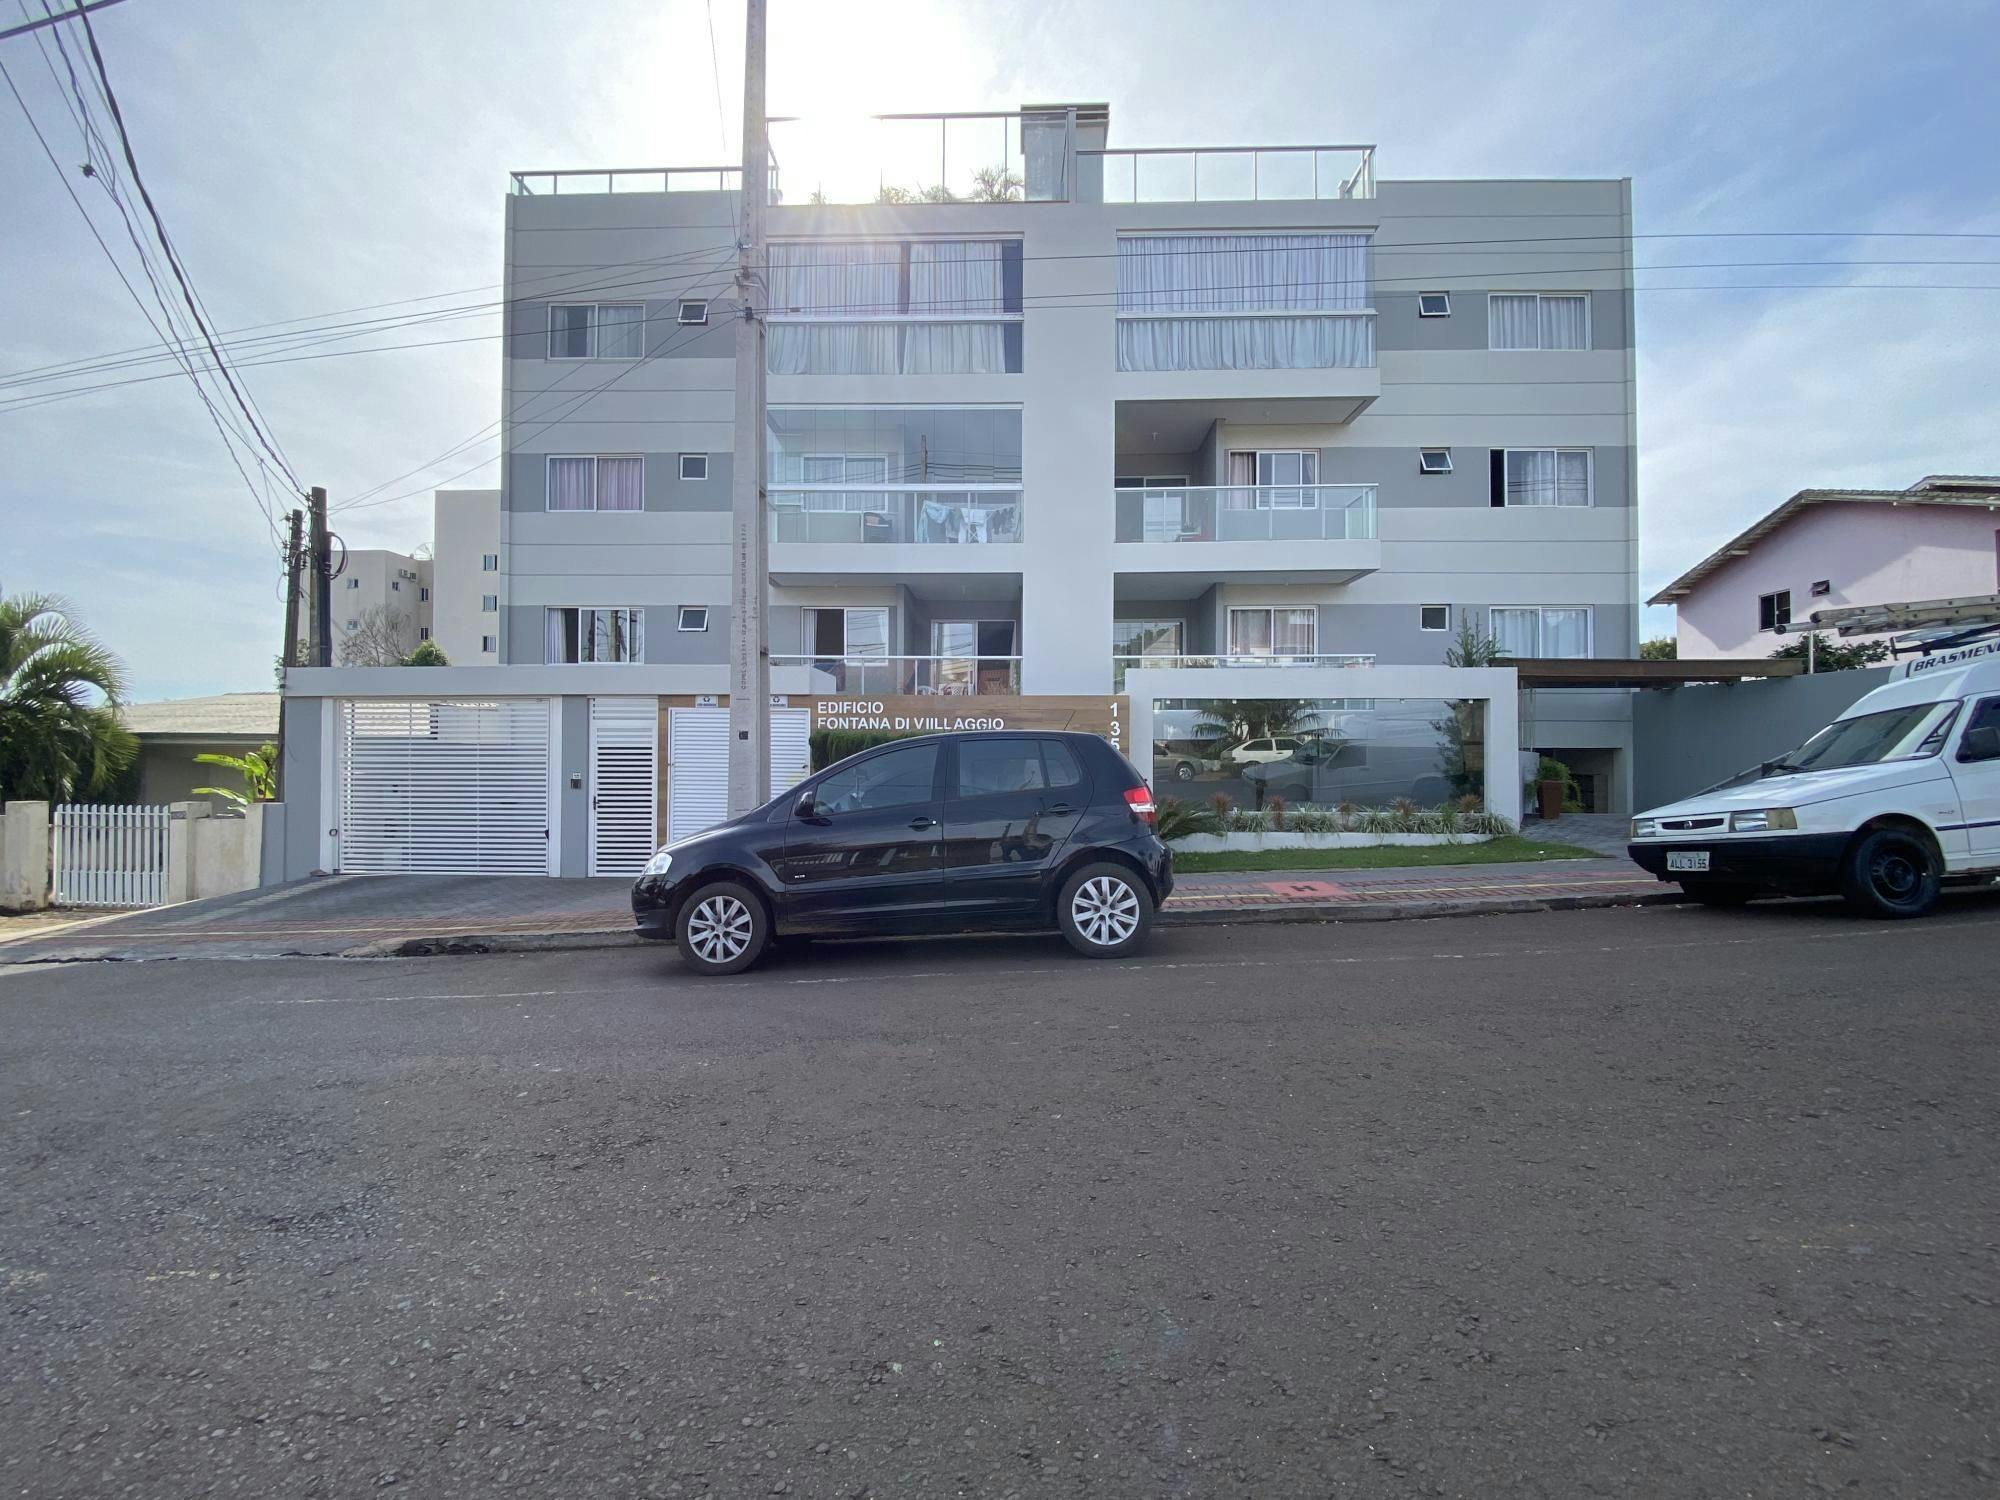 Apartamento duplex à venda no Miniguaçu - Próximo ao Parque de Exposições